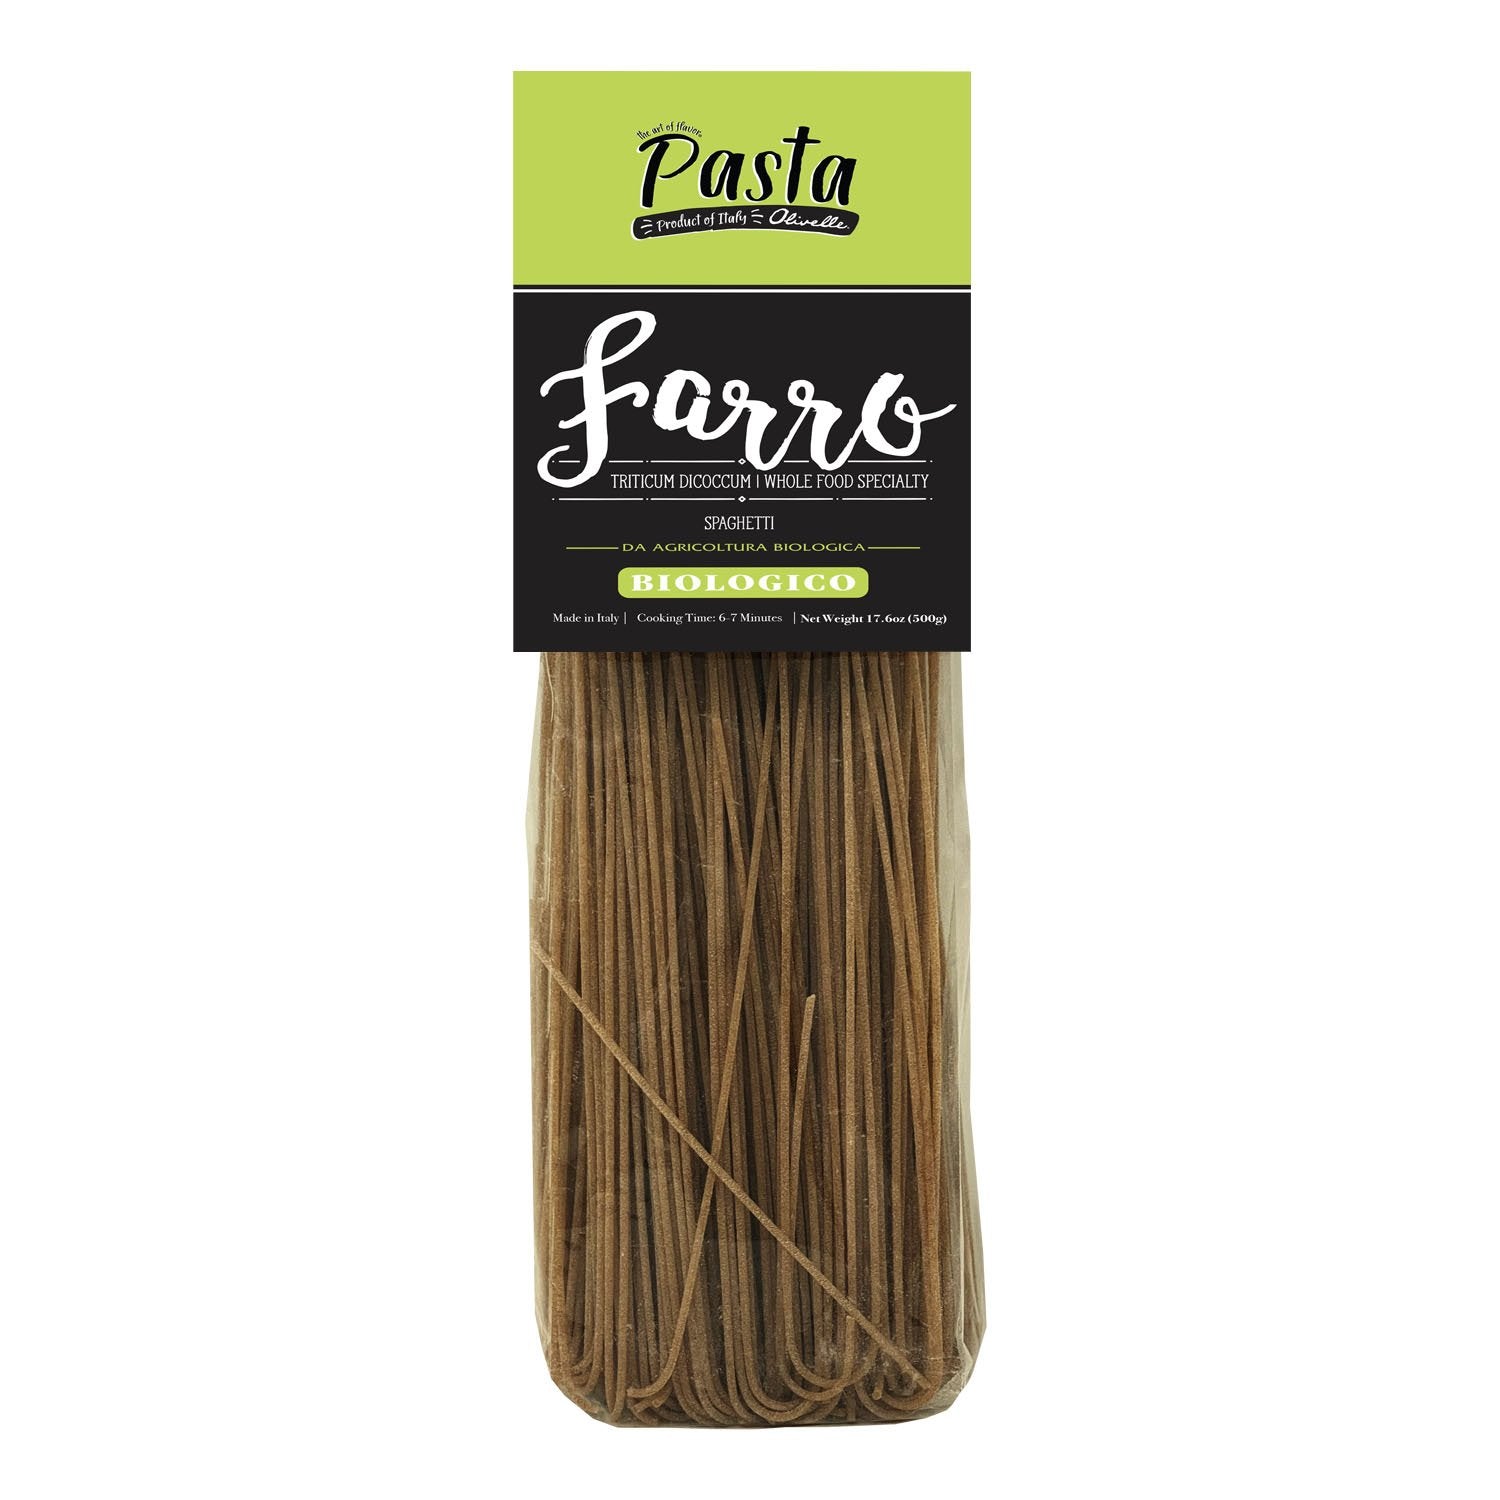 Farro Spaghetti